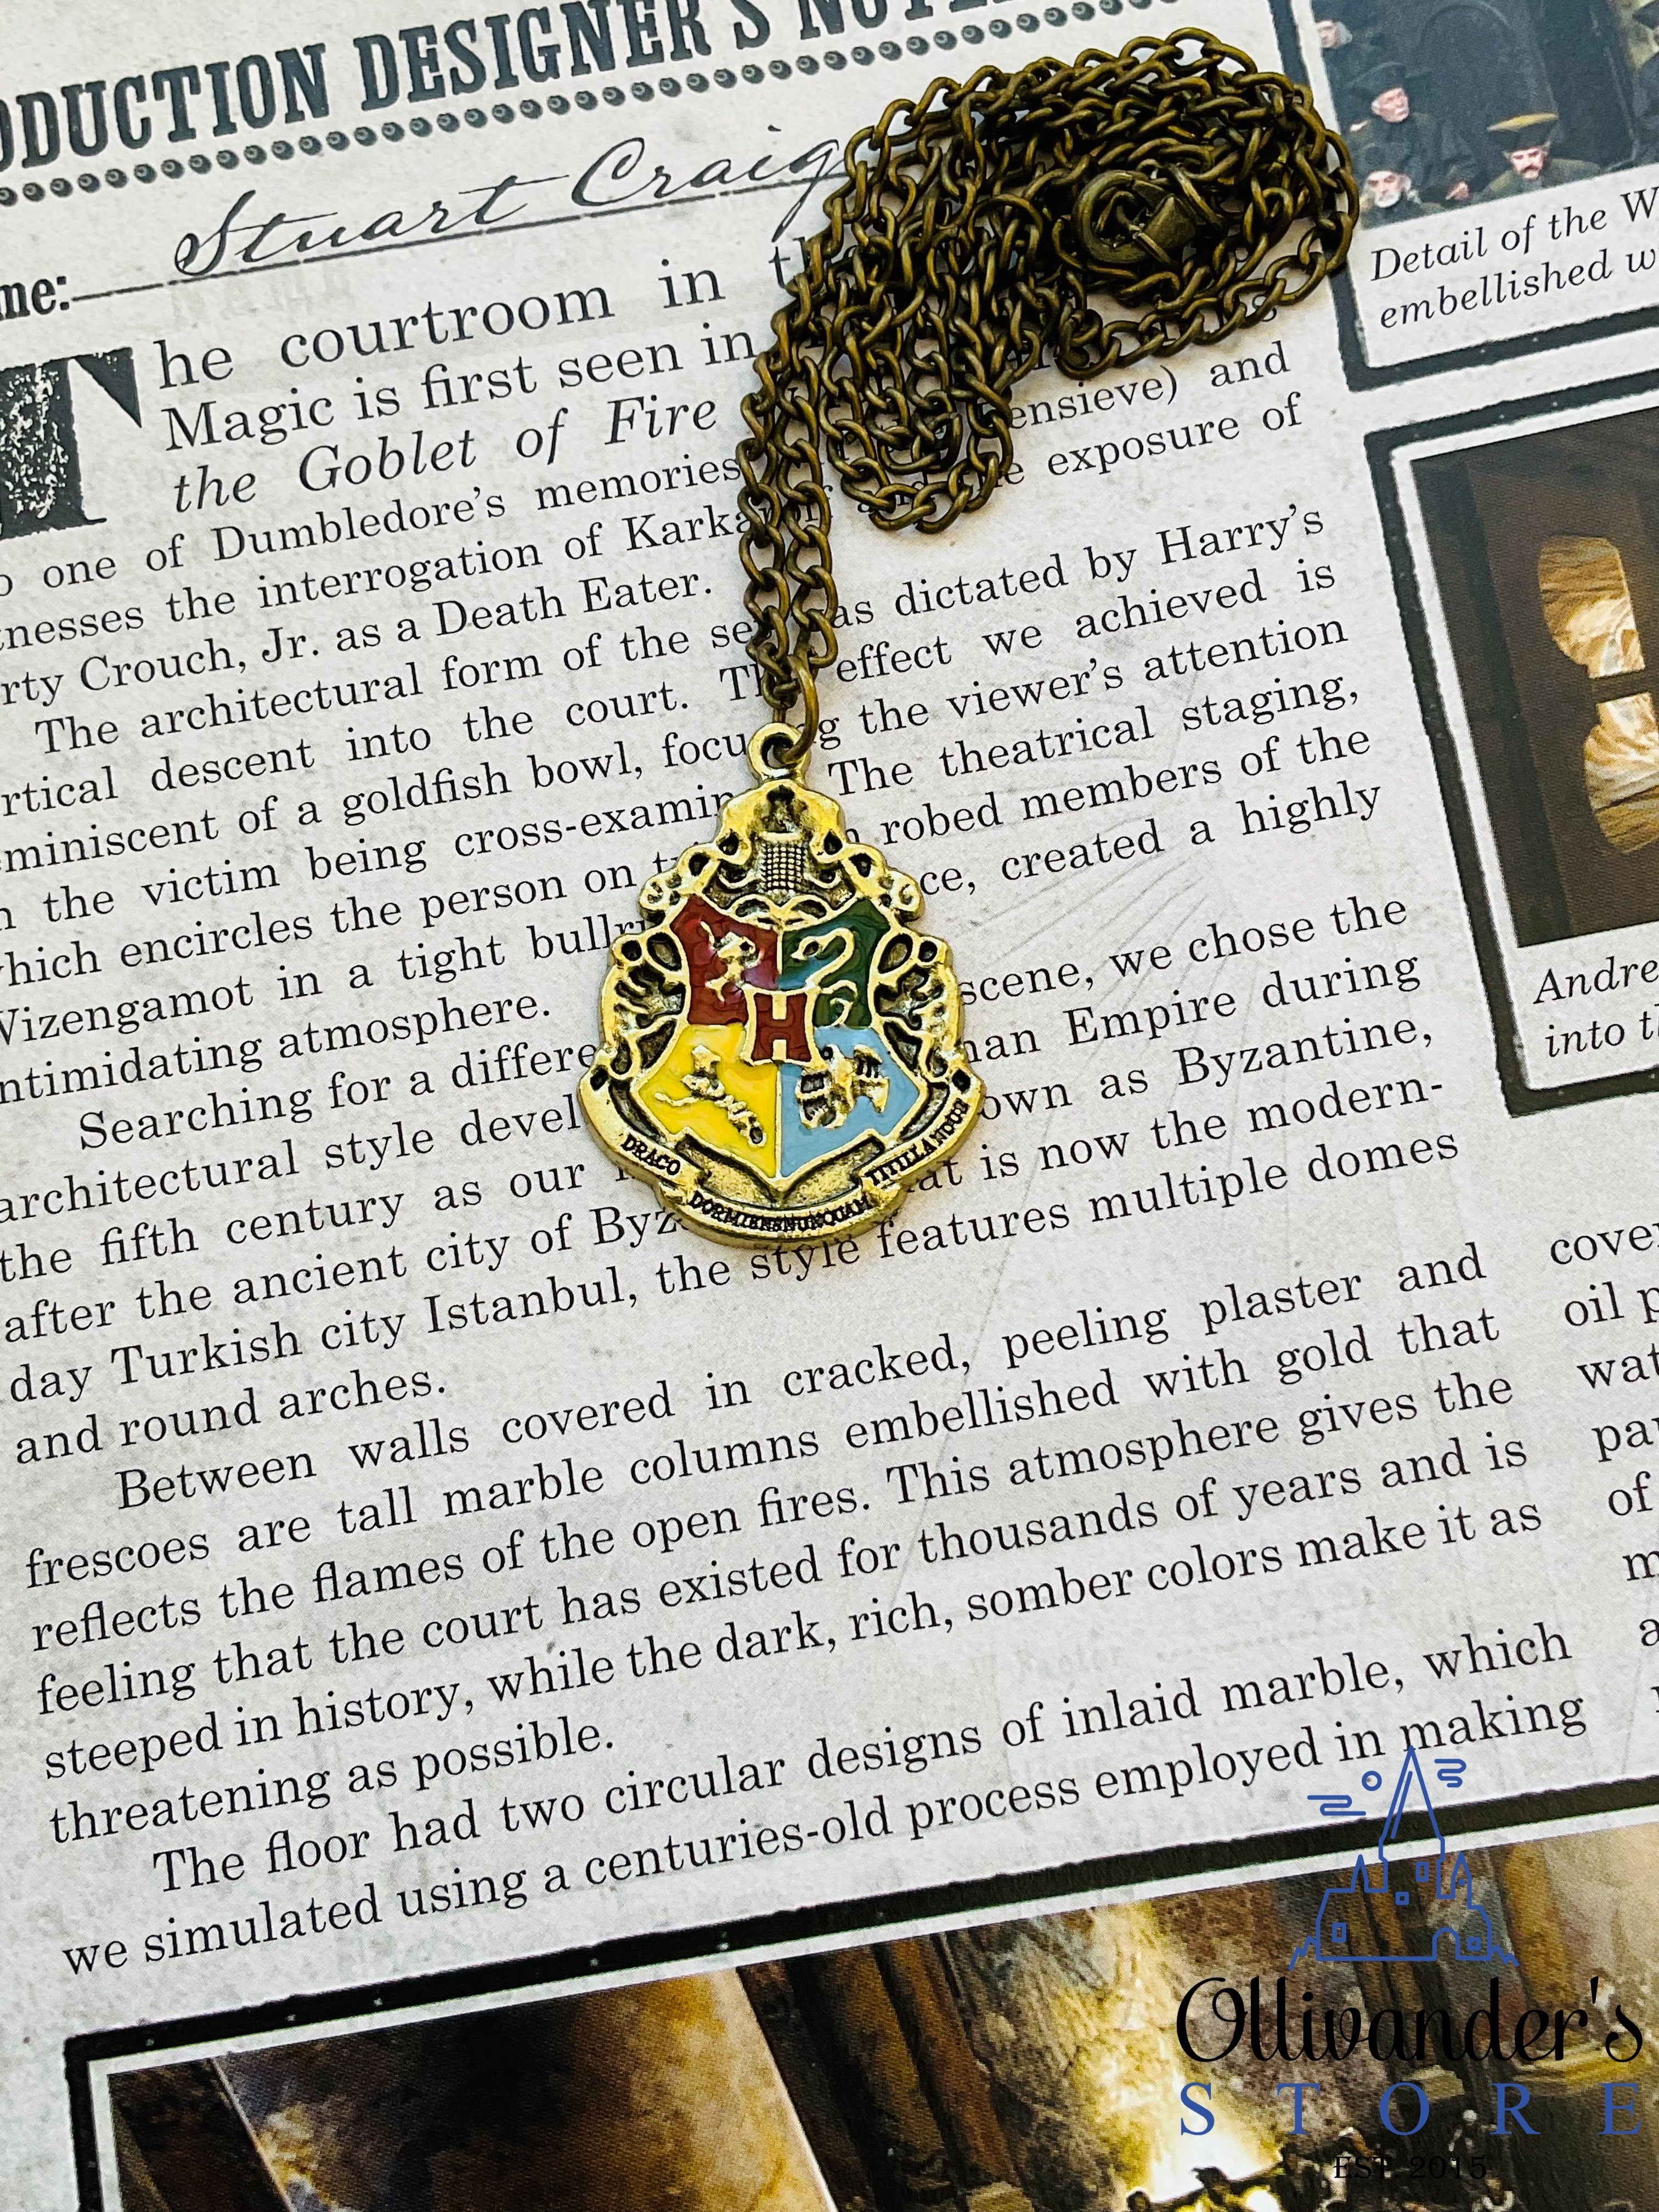 Hogwarts necklace